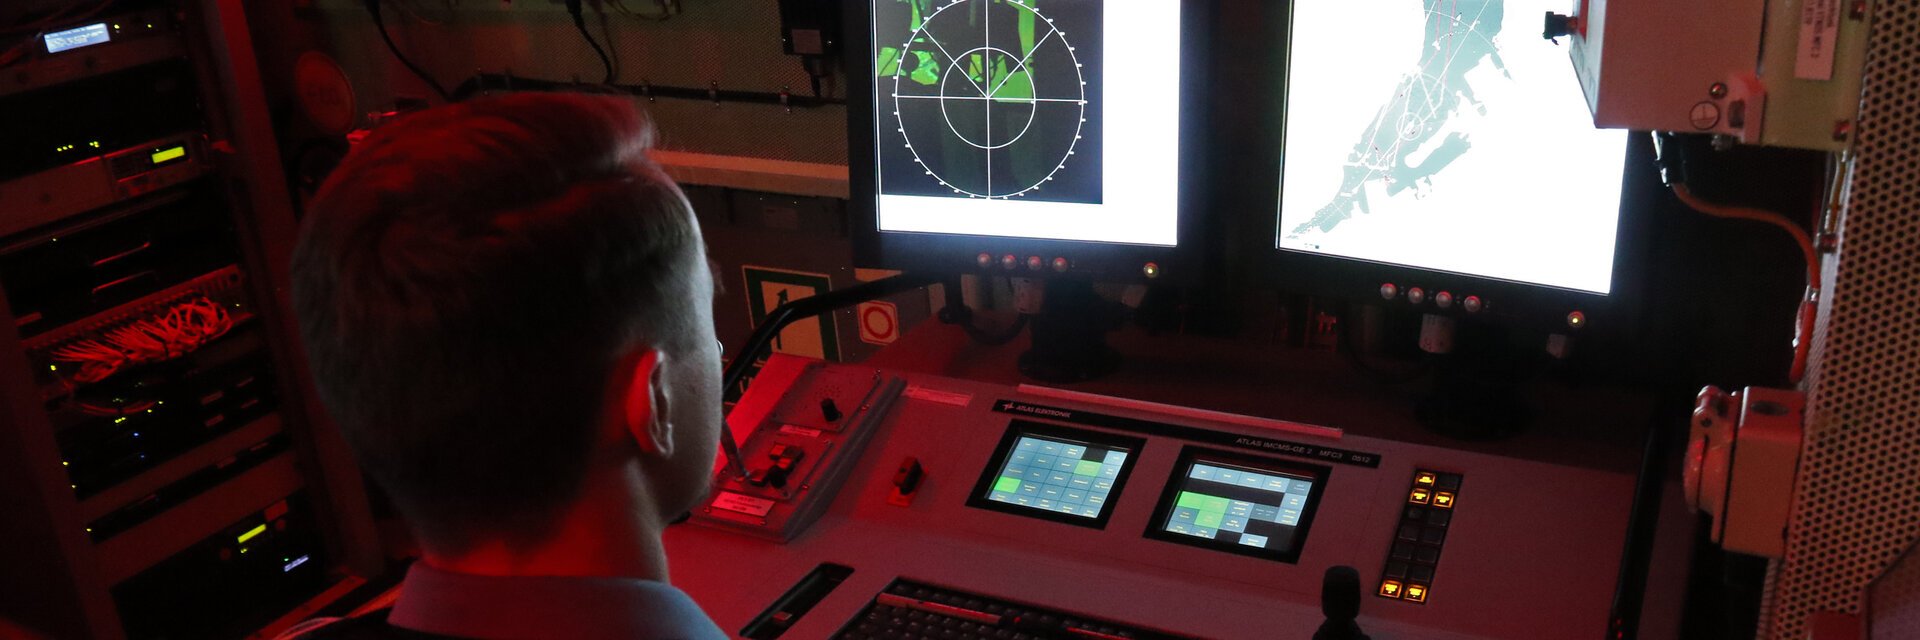 Ein Soldat sitzt vor einem Radarschirm, der Raum ist rot beleuchtet.